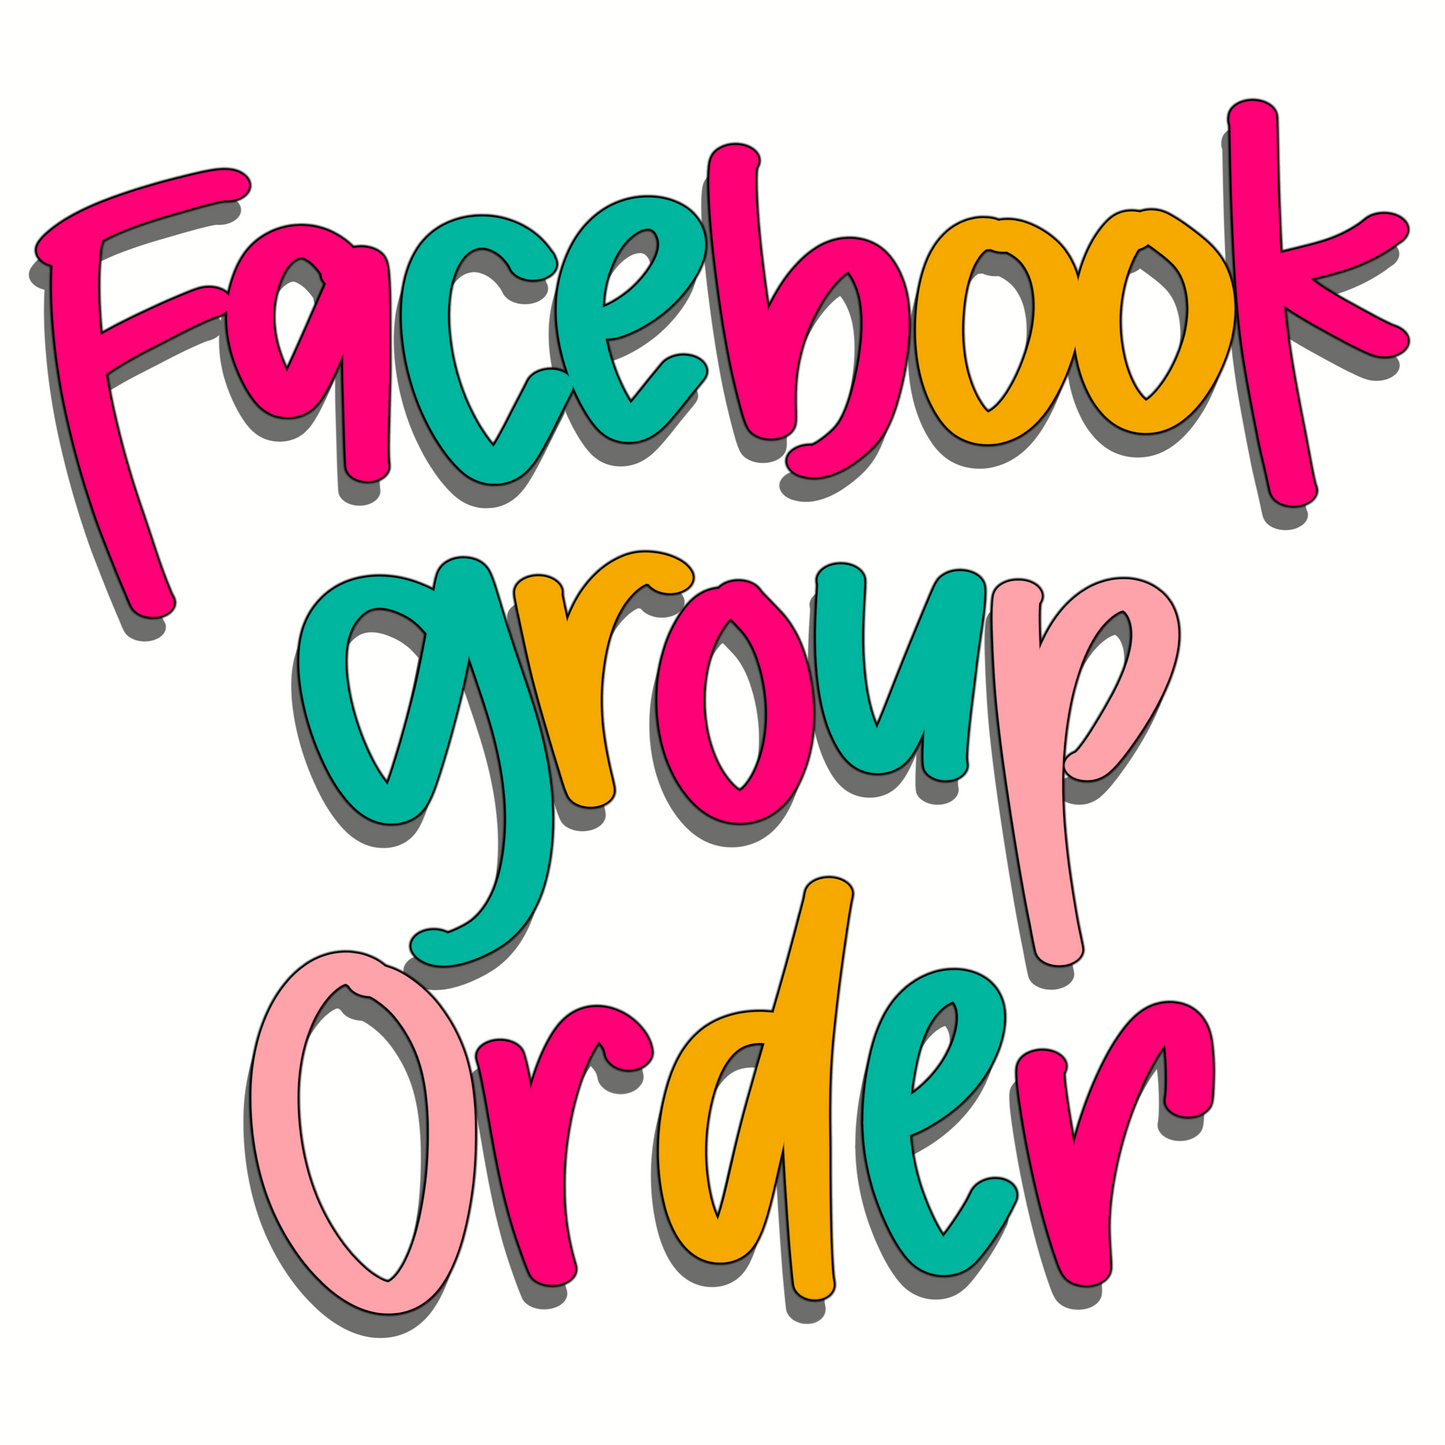 Facebook order